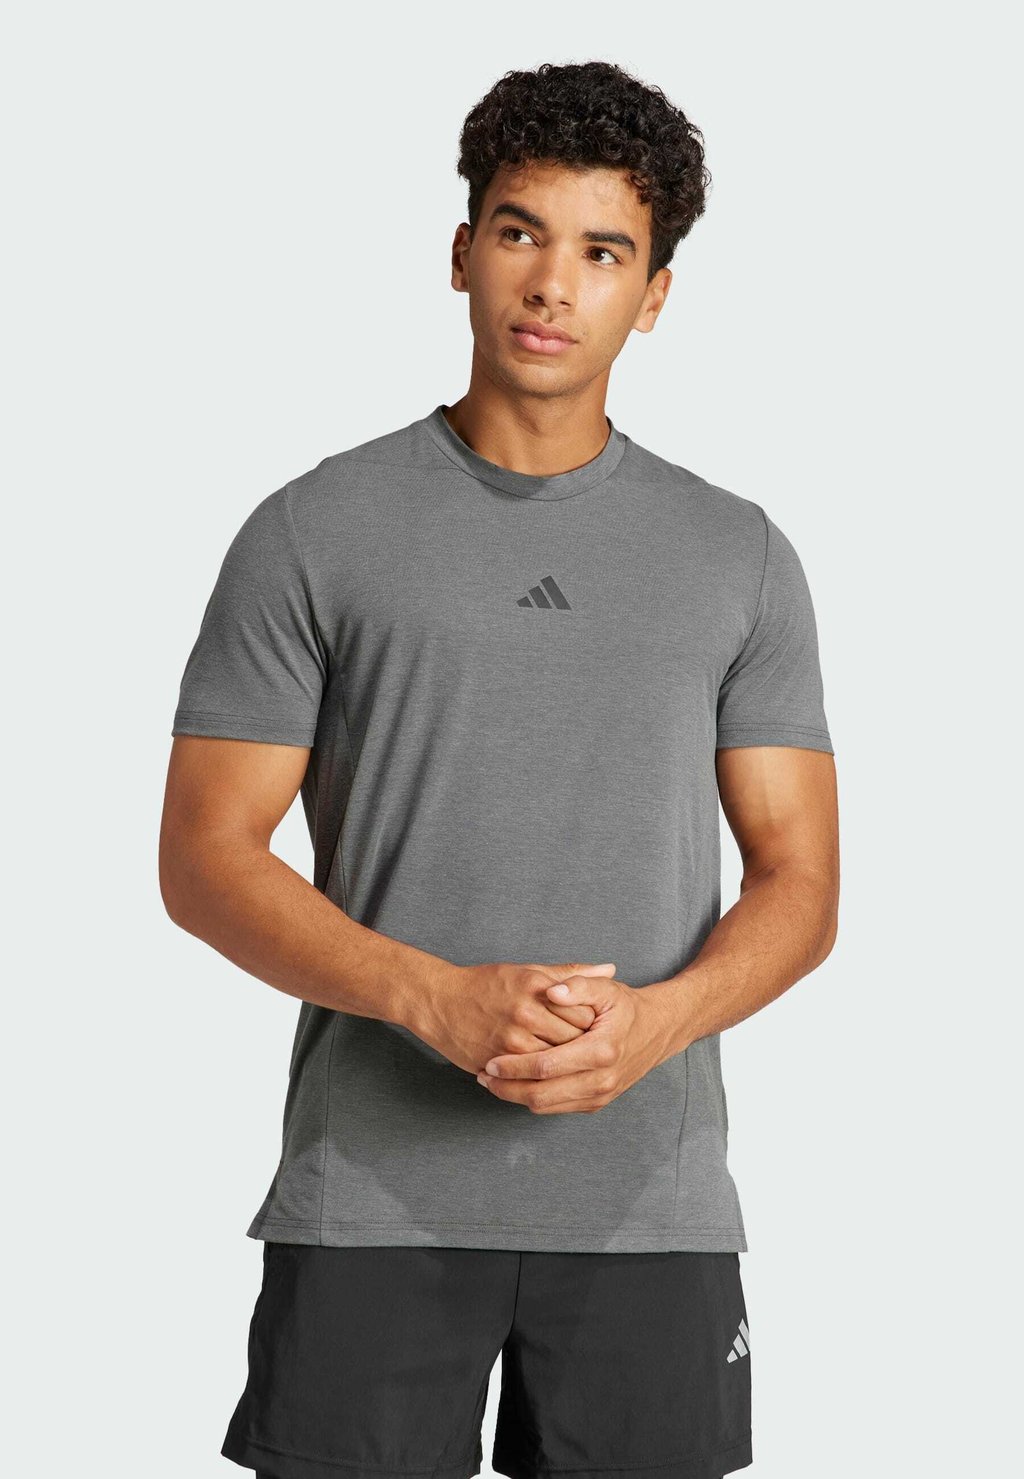 Спортивная футболка Designed For Training Workout Tee Adidas, цвет dgh solid grey шорты для плавания clrdo adidas originals цвет dgh solid grey black